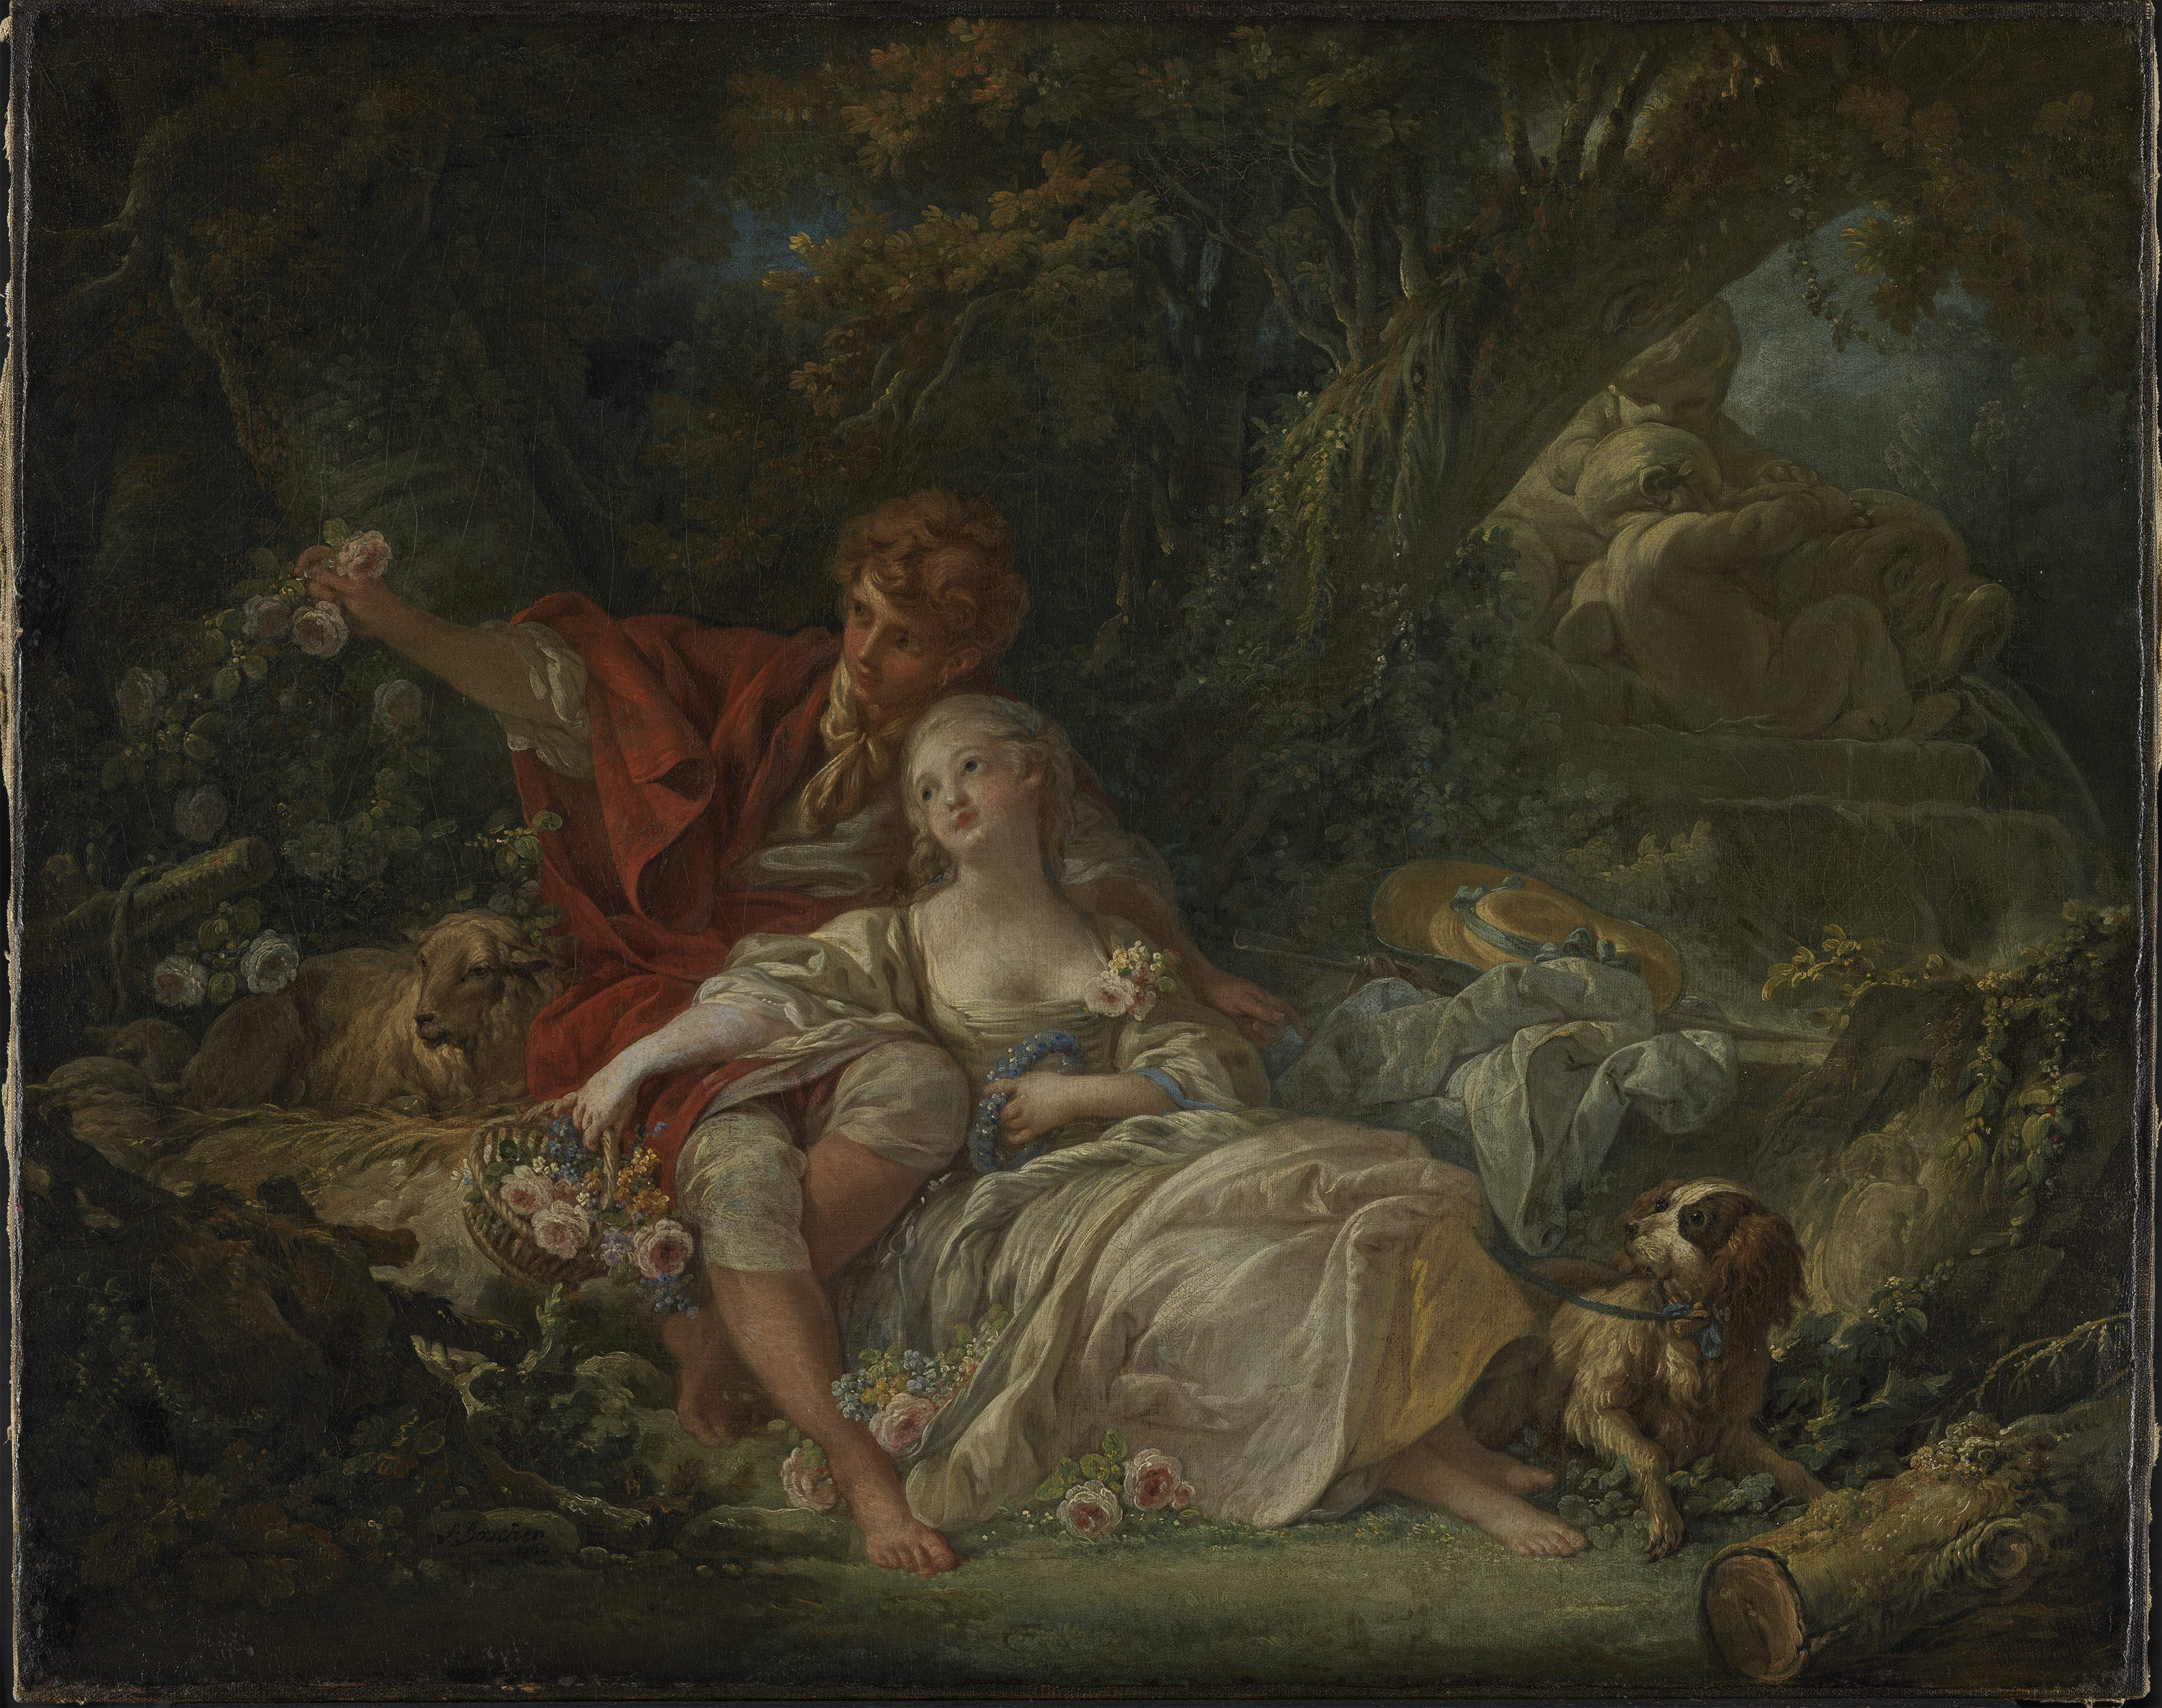 François Bouchers Gemälde Schäfer und Schäferin, auf dem ein Paar in der Natur inszeniert wird, umgeben von Blumen und einem Hund